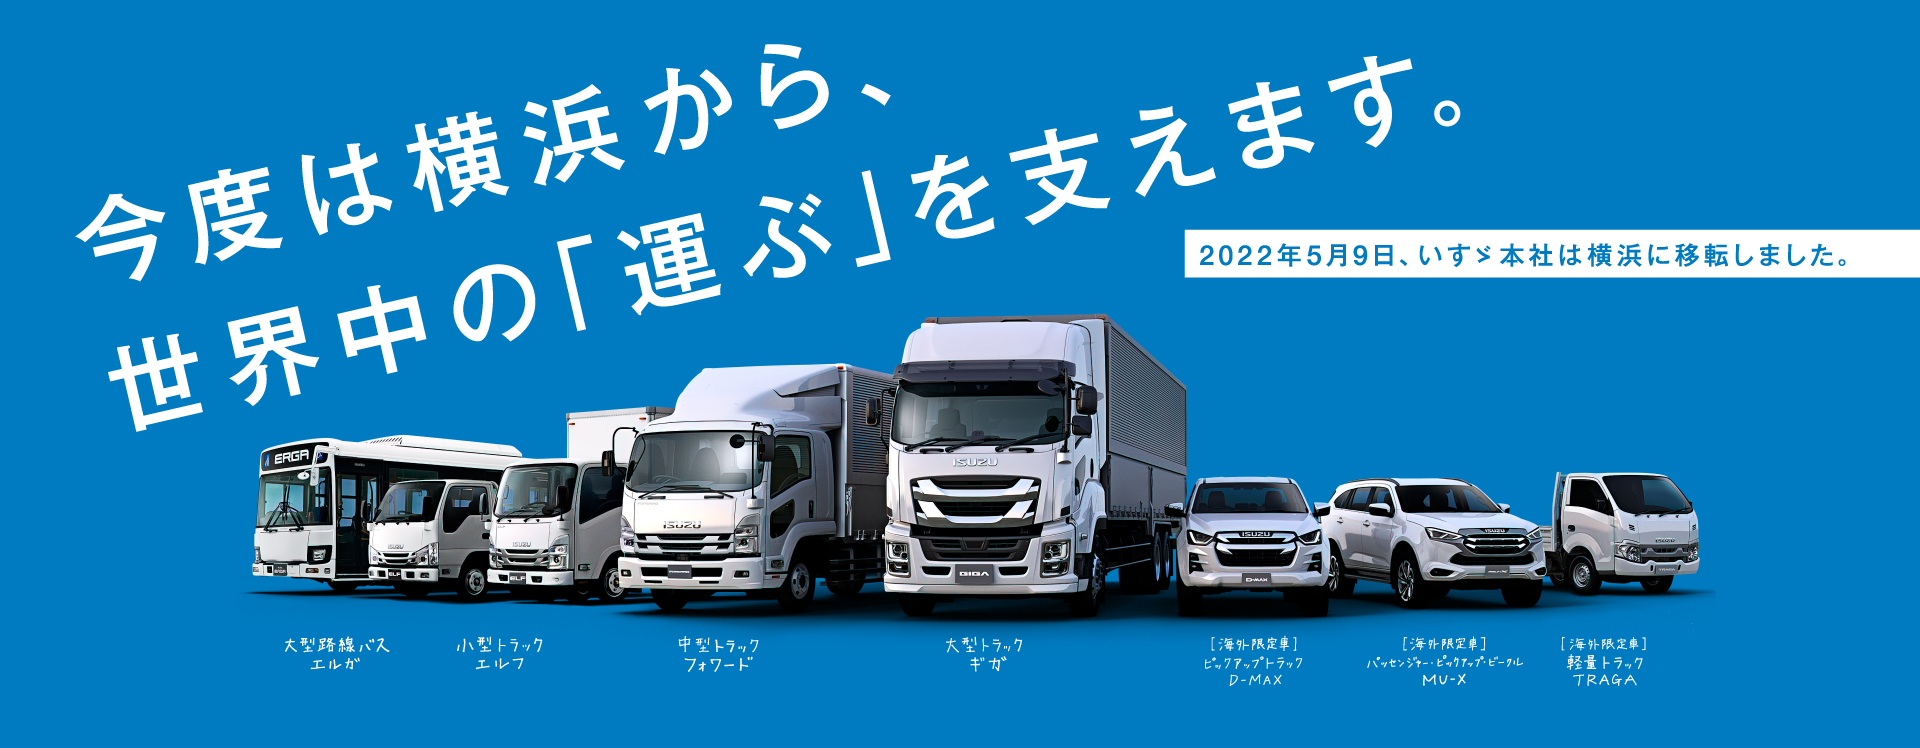 今度は横浜から、世界中の「運ぶ」を支えます。2022年5月9日、いすゞ本社は横浜に移転しました。